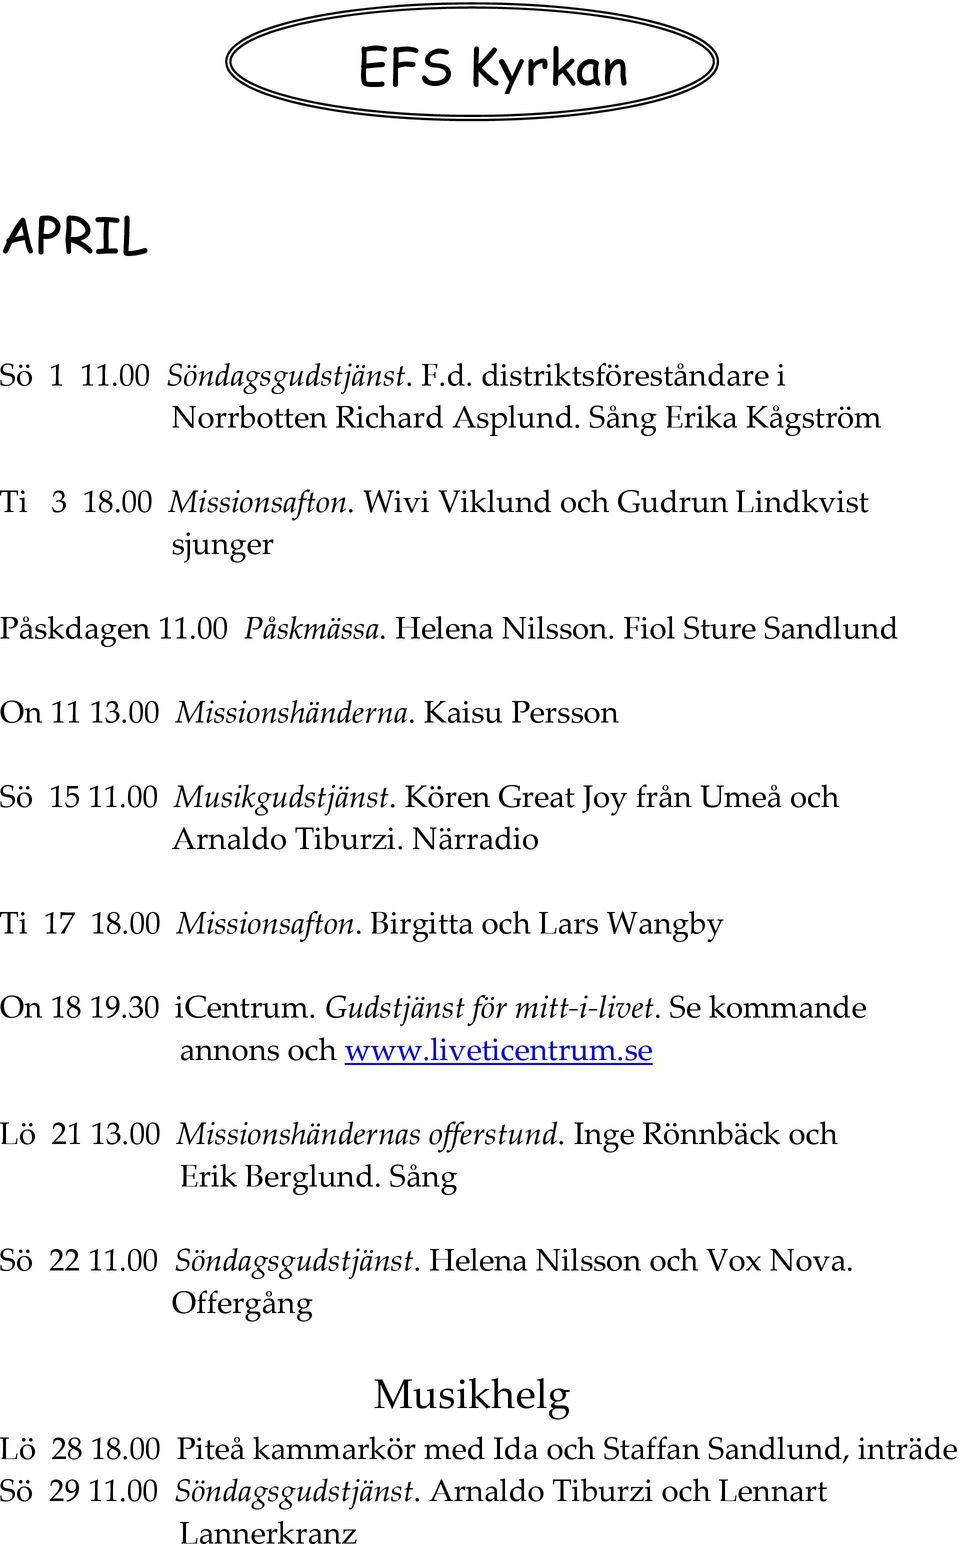 Kören Great Joy från Umeå och Arnaldo Tiburzi. Närradio Ti 17 18.00 Missionsafton. Birgitta och Lars Wangby On 18 19.30 icentrum. Gudstjänst för mitt-i-livet. Se kommande annons och www.liveticentrum.